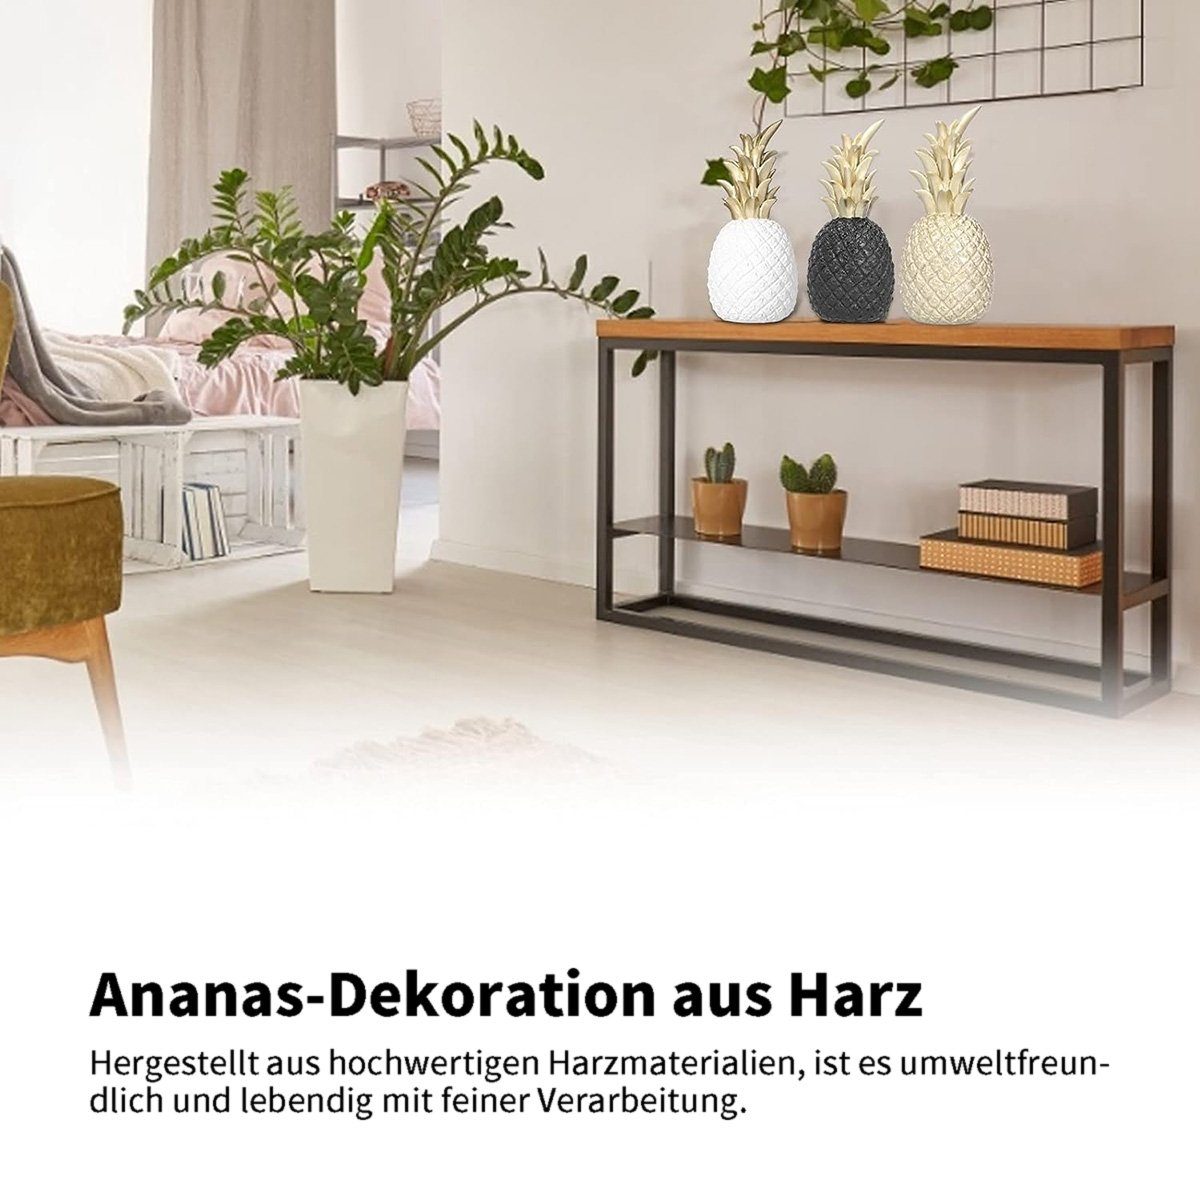 INS Tischdekoration, Schwarz götäzer Wohnzimmer-TV-Schrank, Ananas-Ornamente, kreative Wohnaccessoires Click-Ornamente große